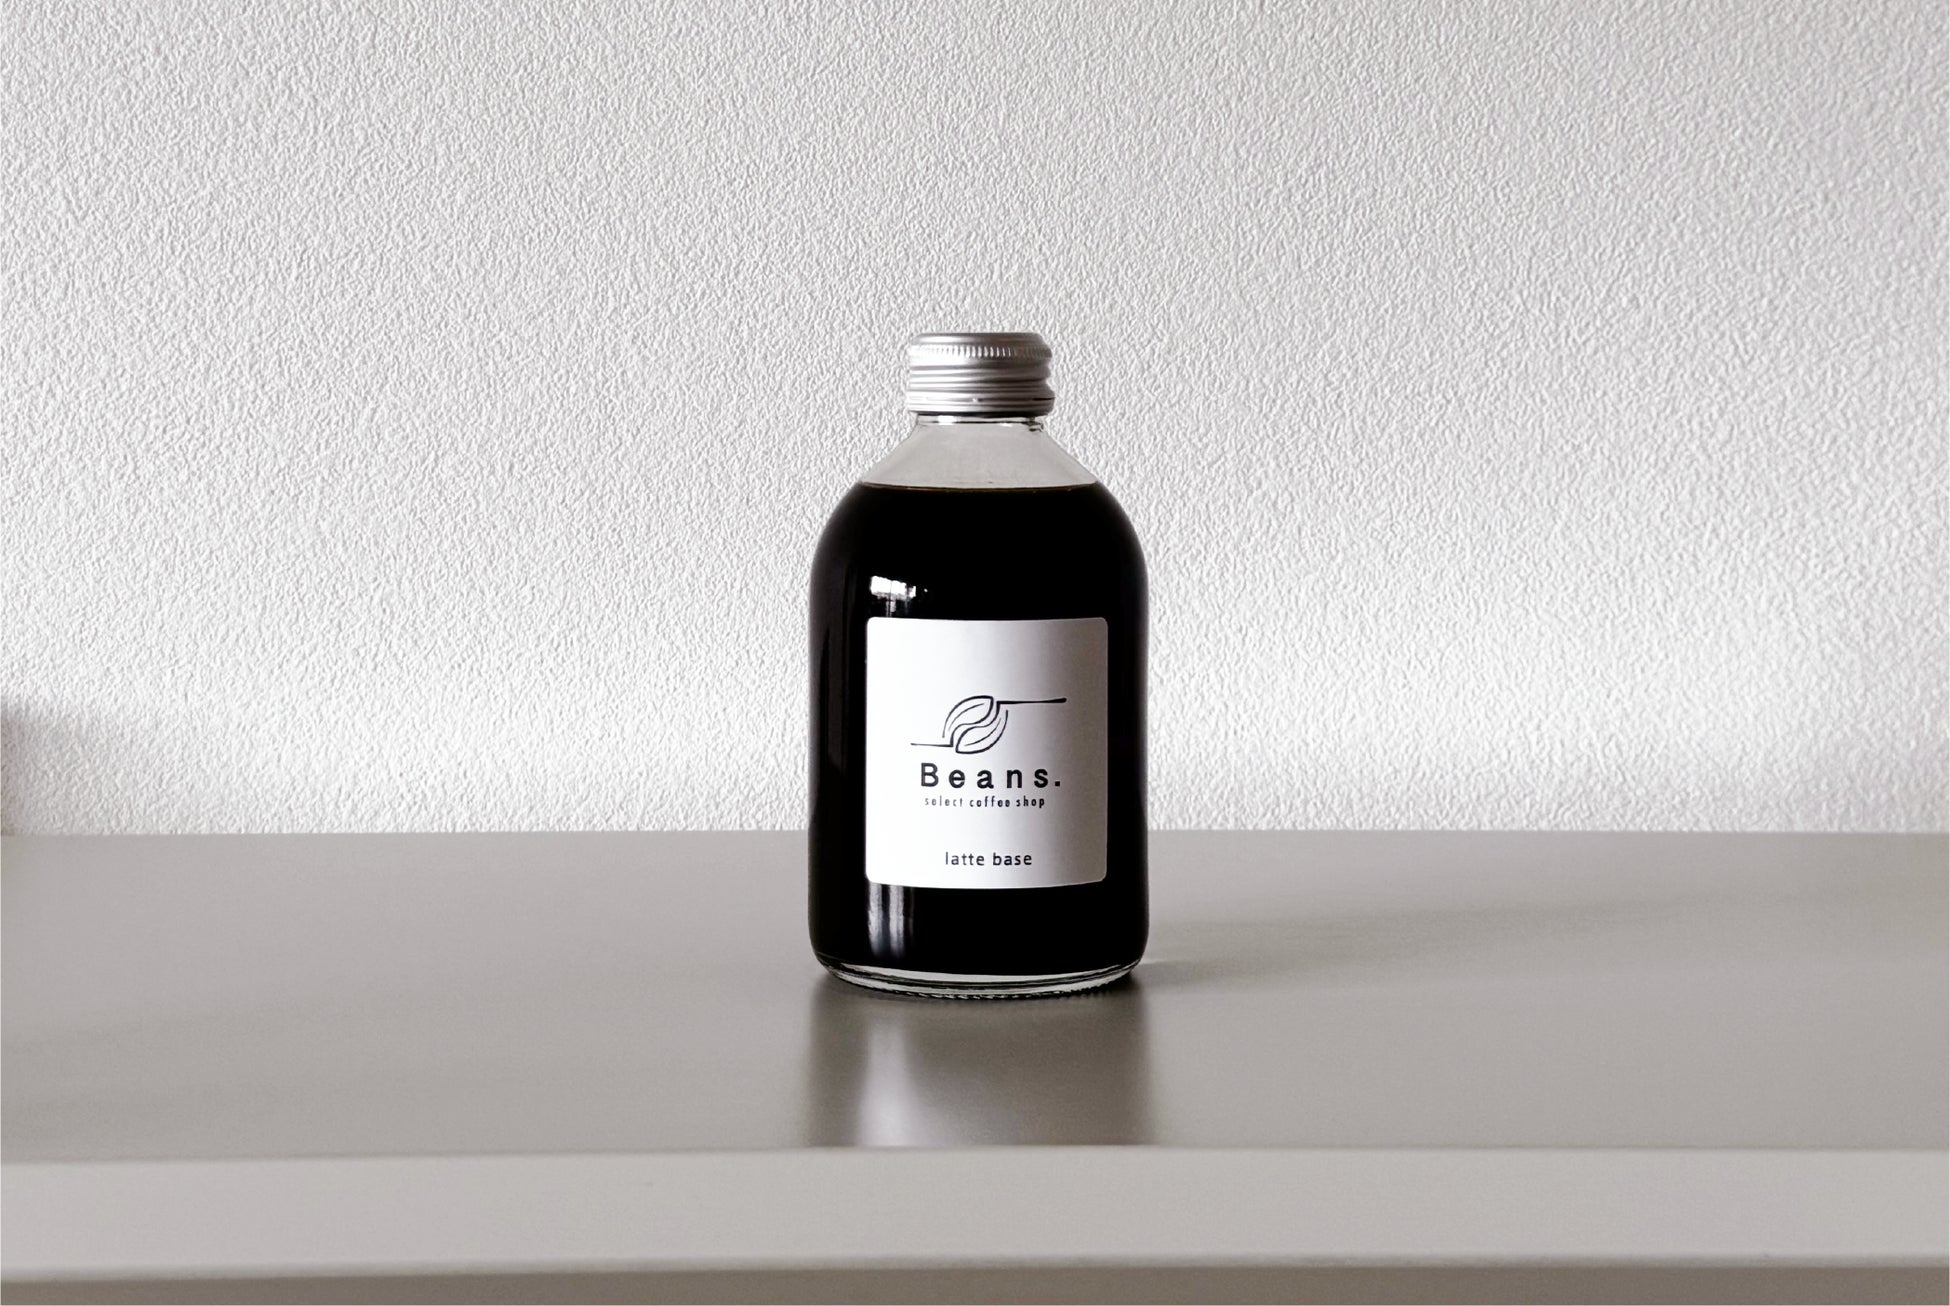 静岡・三島のジン”Water Dragon Spirits”が、アメリカ・イギリス・アジアの世界的酒類コンペティションで最高評価を獲得